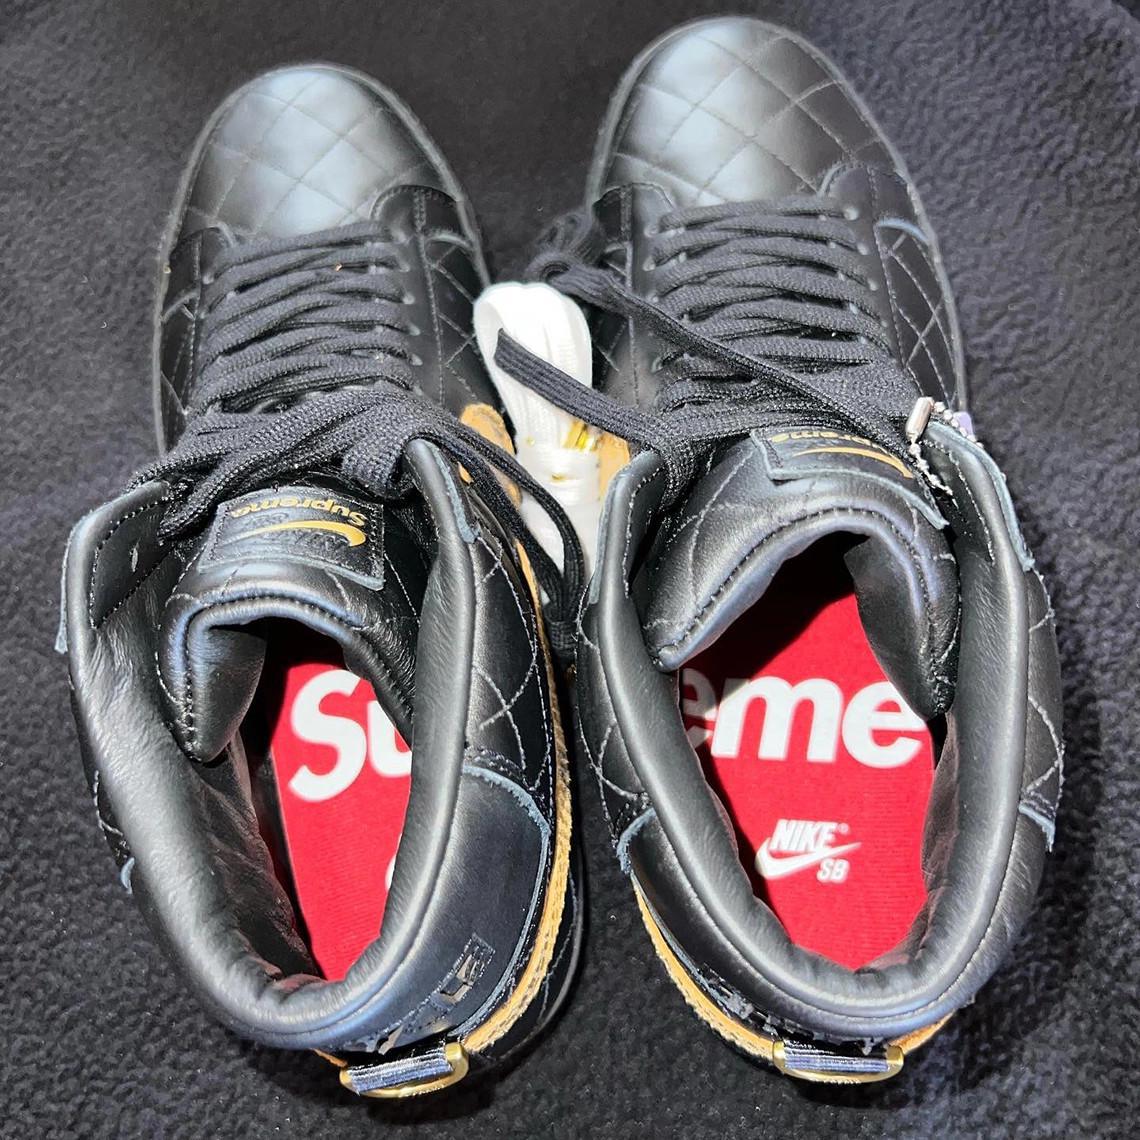 Supreme sort une autre série de Nike SB Blazers matelassés.